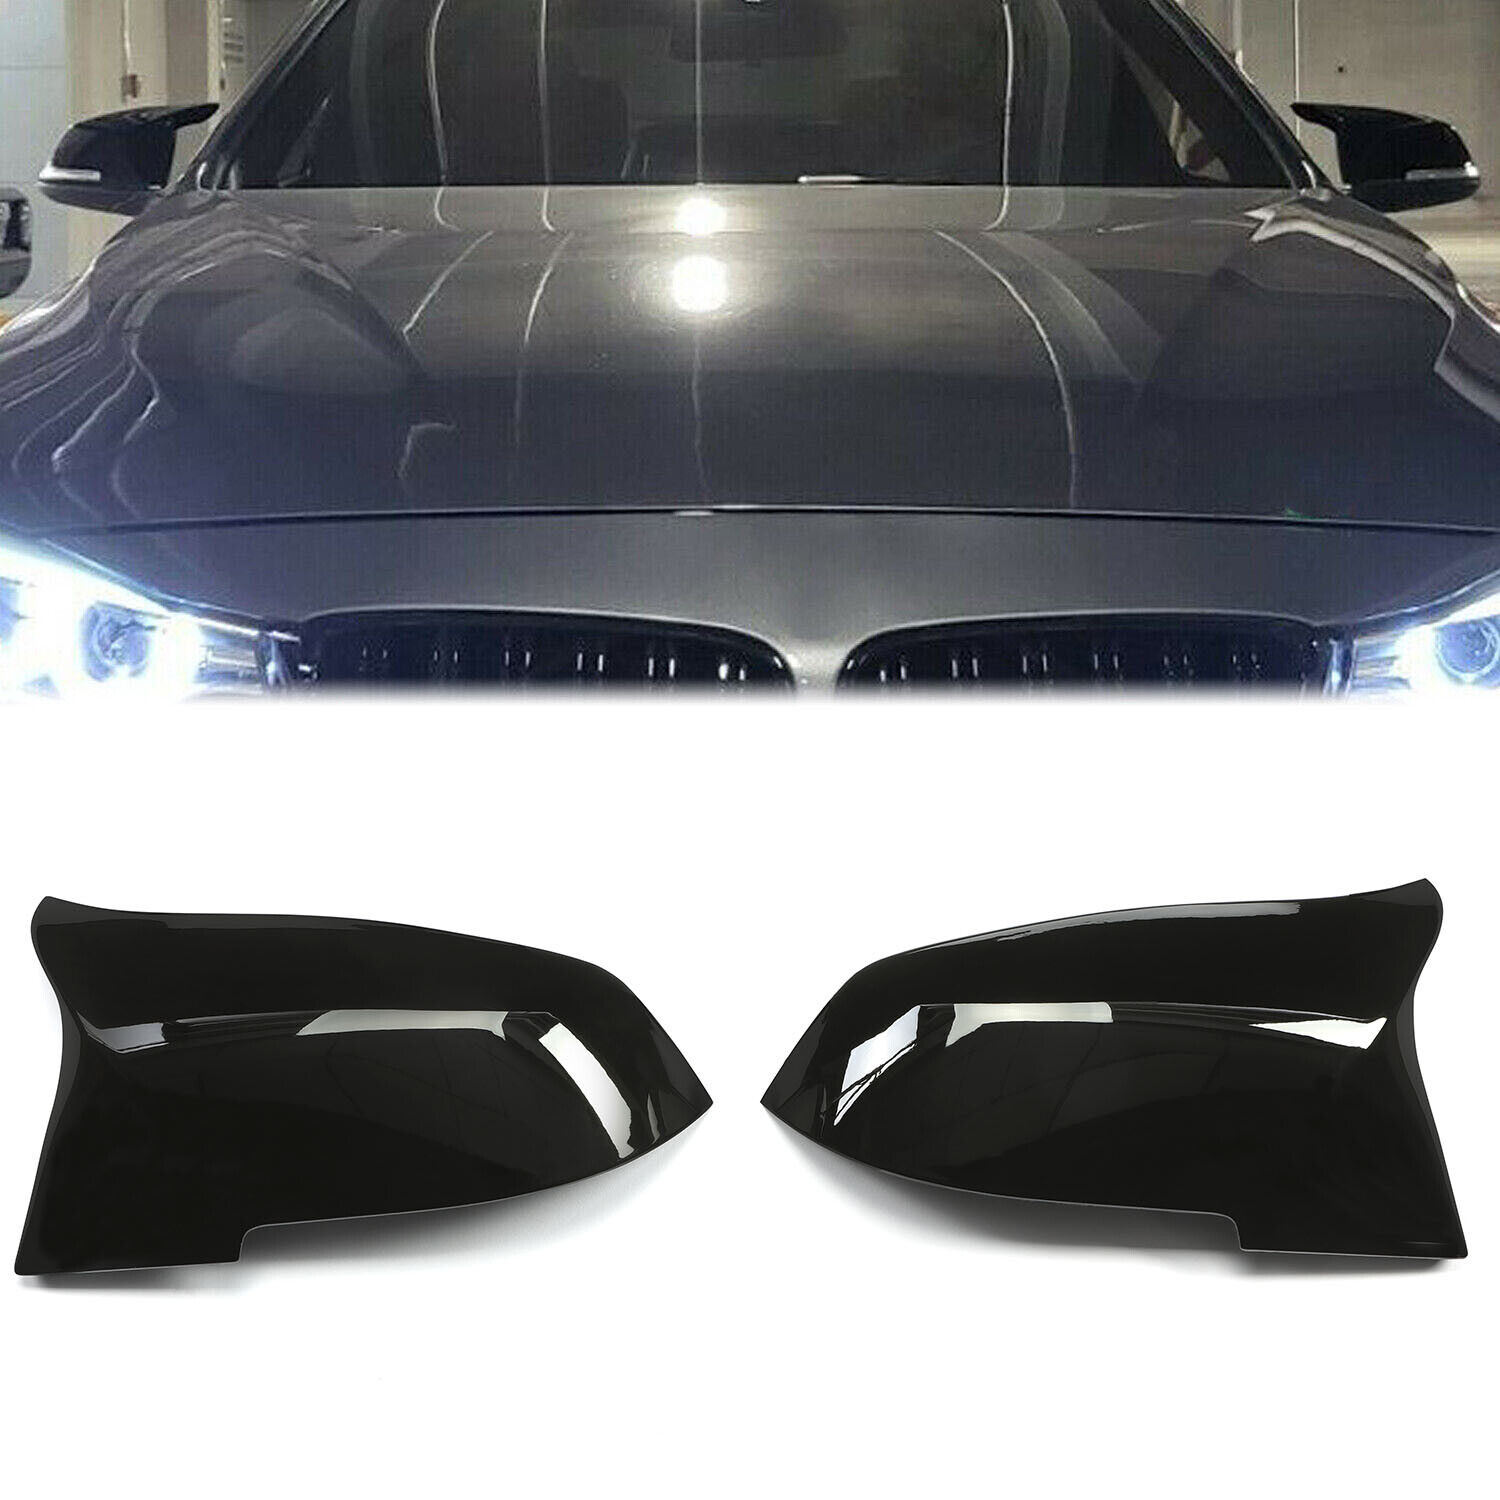 2xGloss Black Side Mirror Cover Cap For BMW 3/4 SERIES F20 F21 F30 F32 F36 M3